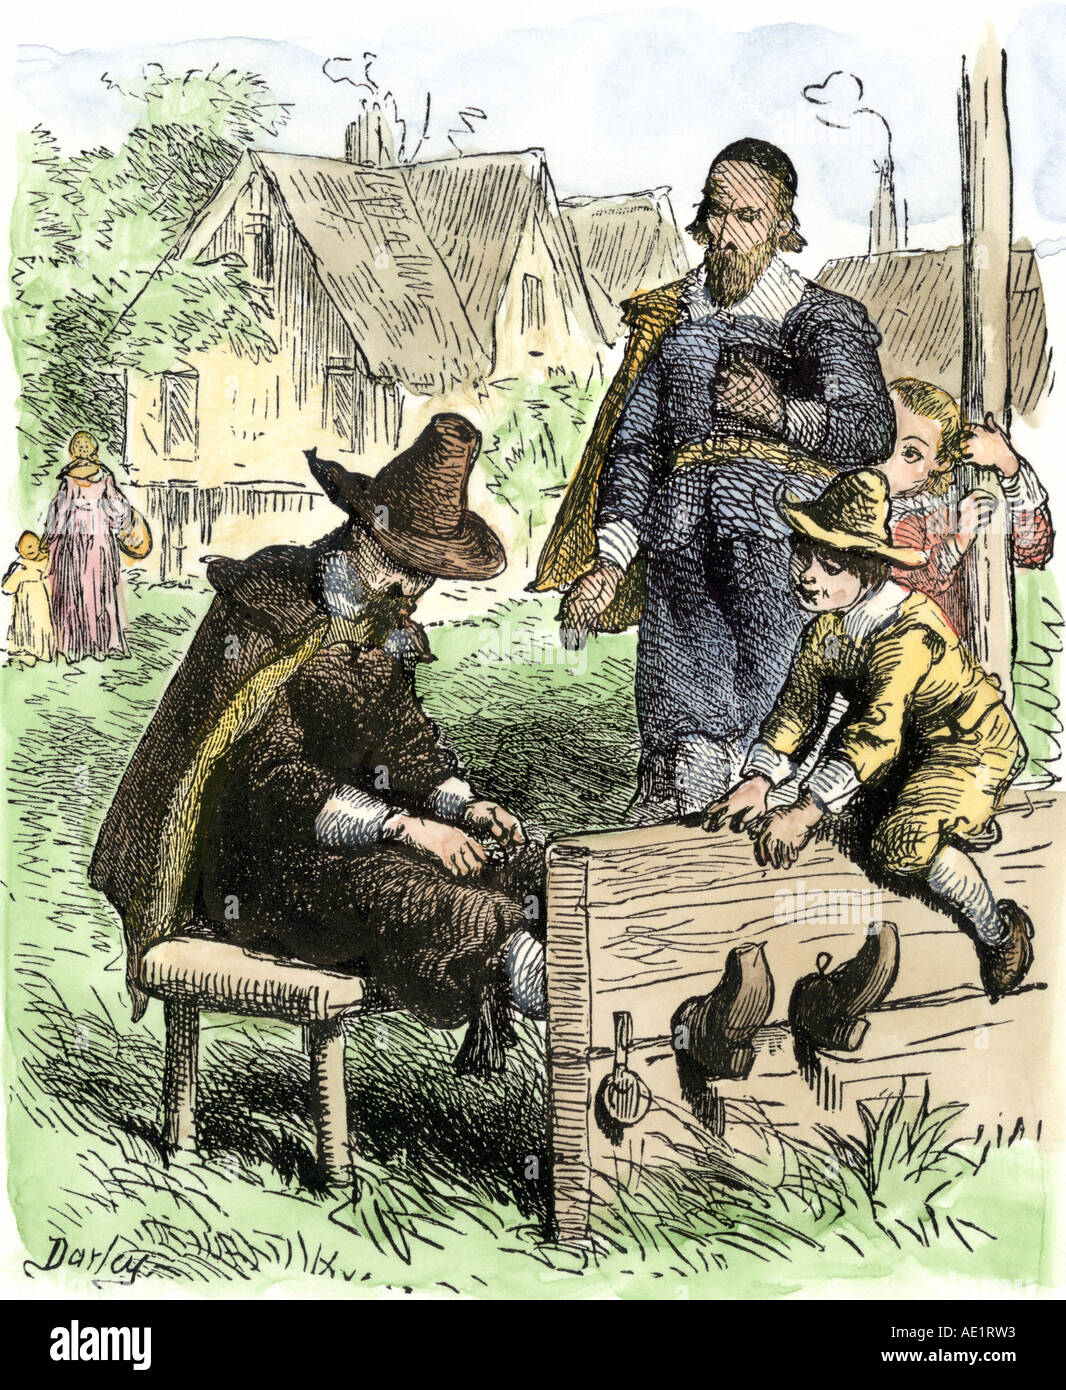 Puritan délinquant dans la colonie de la baie du Massachusetts stocks 1600. À la main, gravure sur bois Banque D'Images